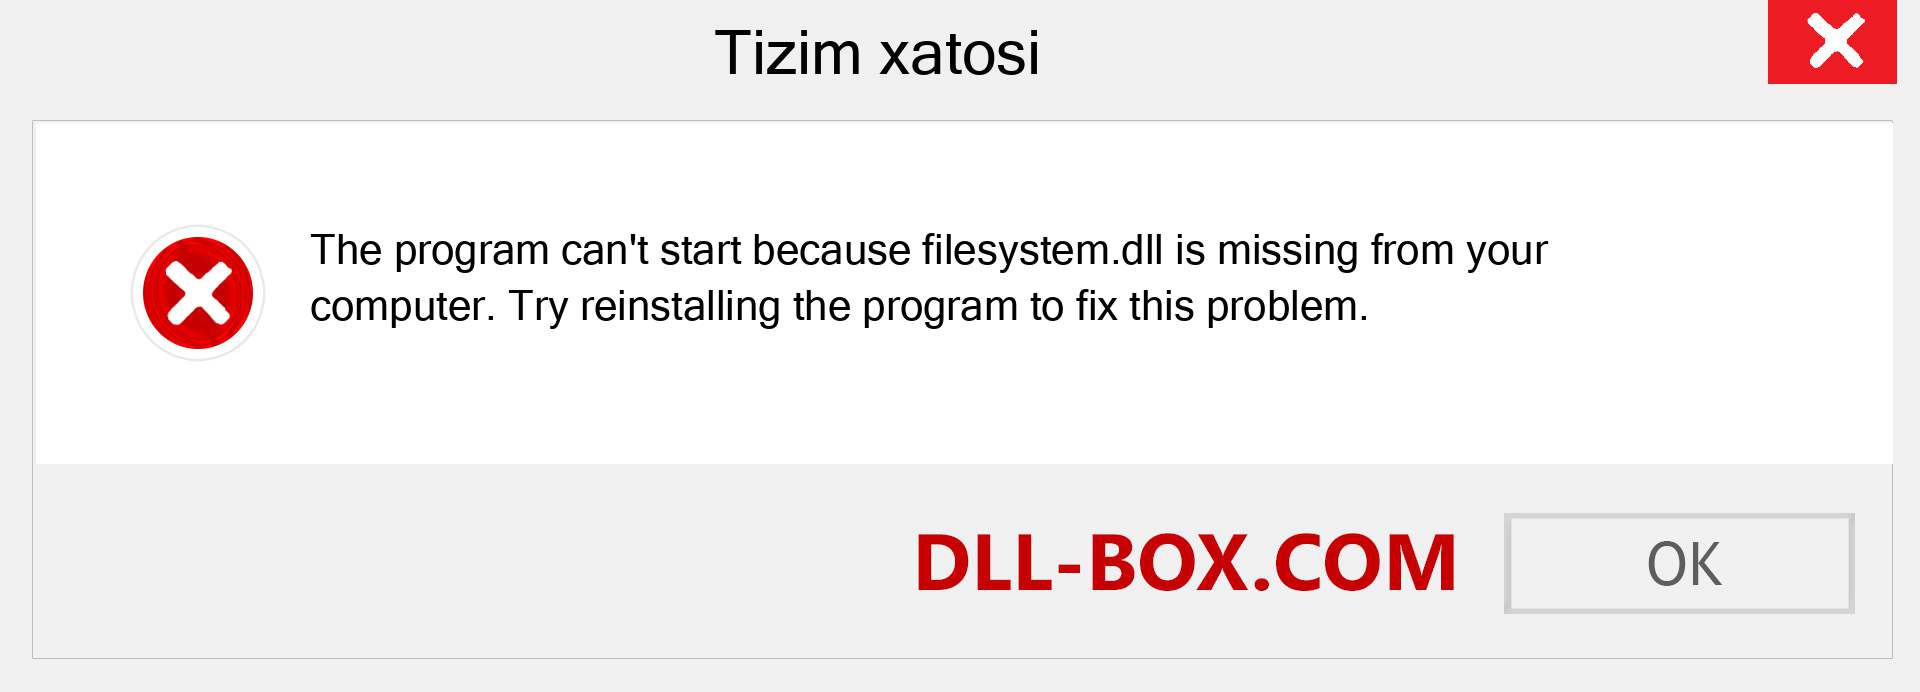 filesystem.dll fayli yo'qolganmi?. Windows 7, 8, 10 uchun yuklab olish - Windowsda filesystem dll etishmayotgan xatoni tuzating, rasmlar, rasmlar